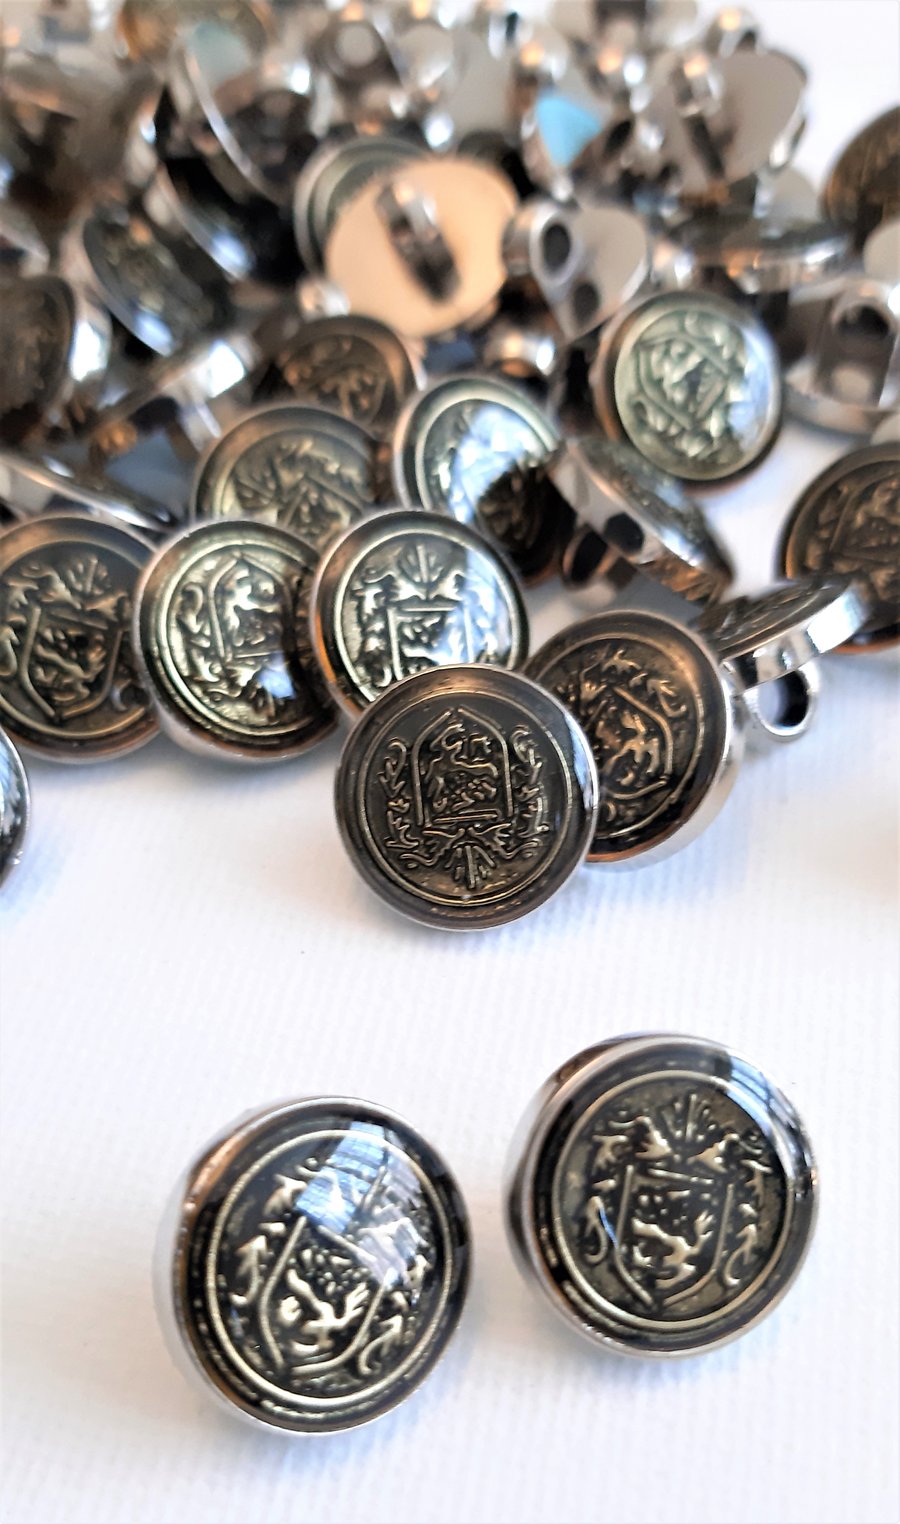 10 Heraldic Crest buttons, 15mm diameter, metallic buttons